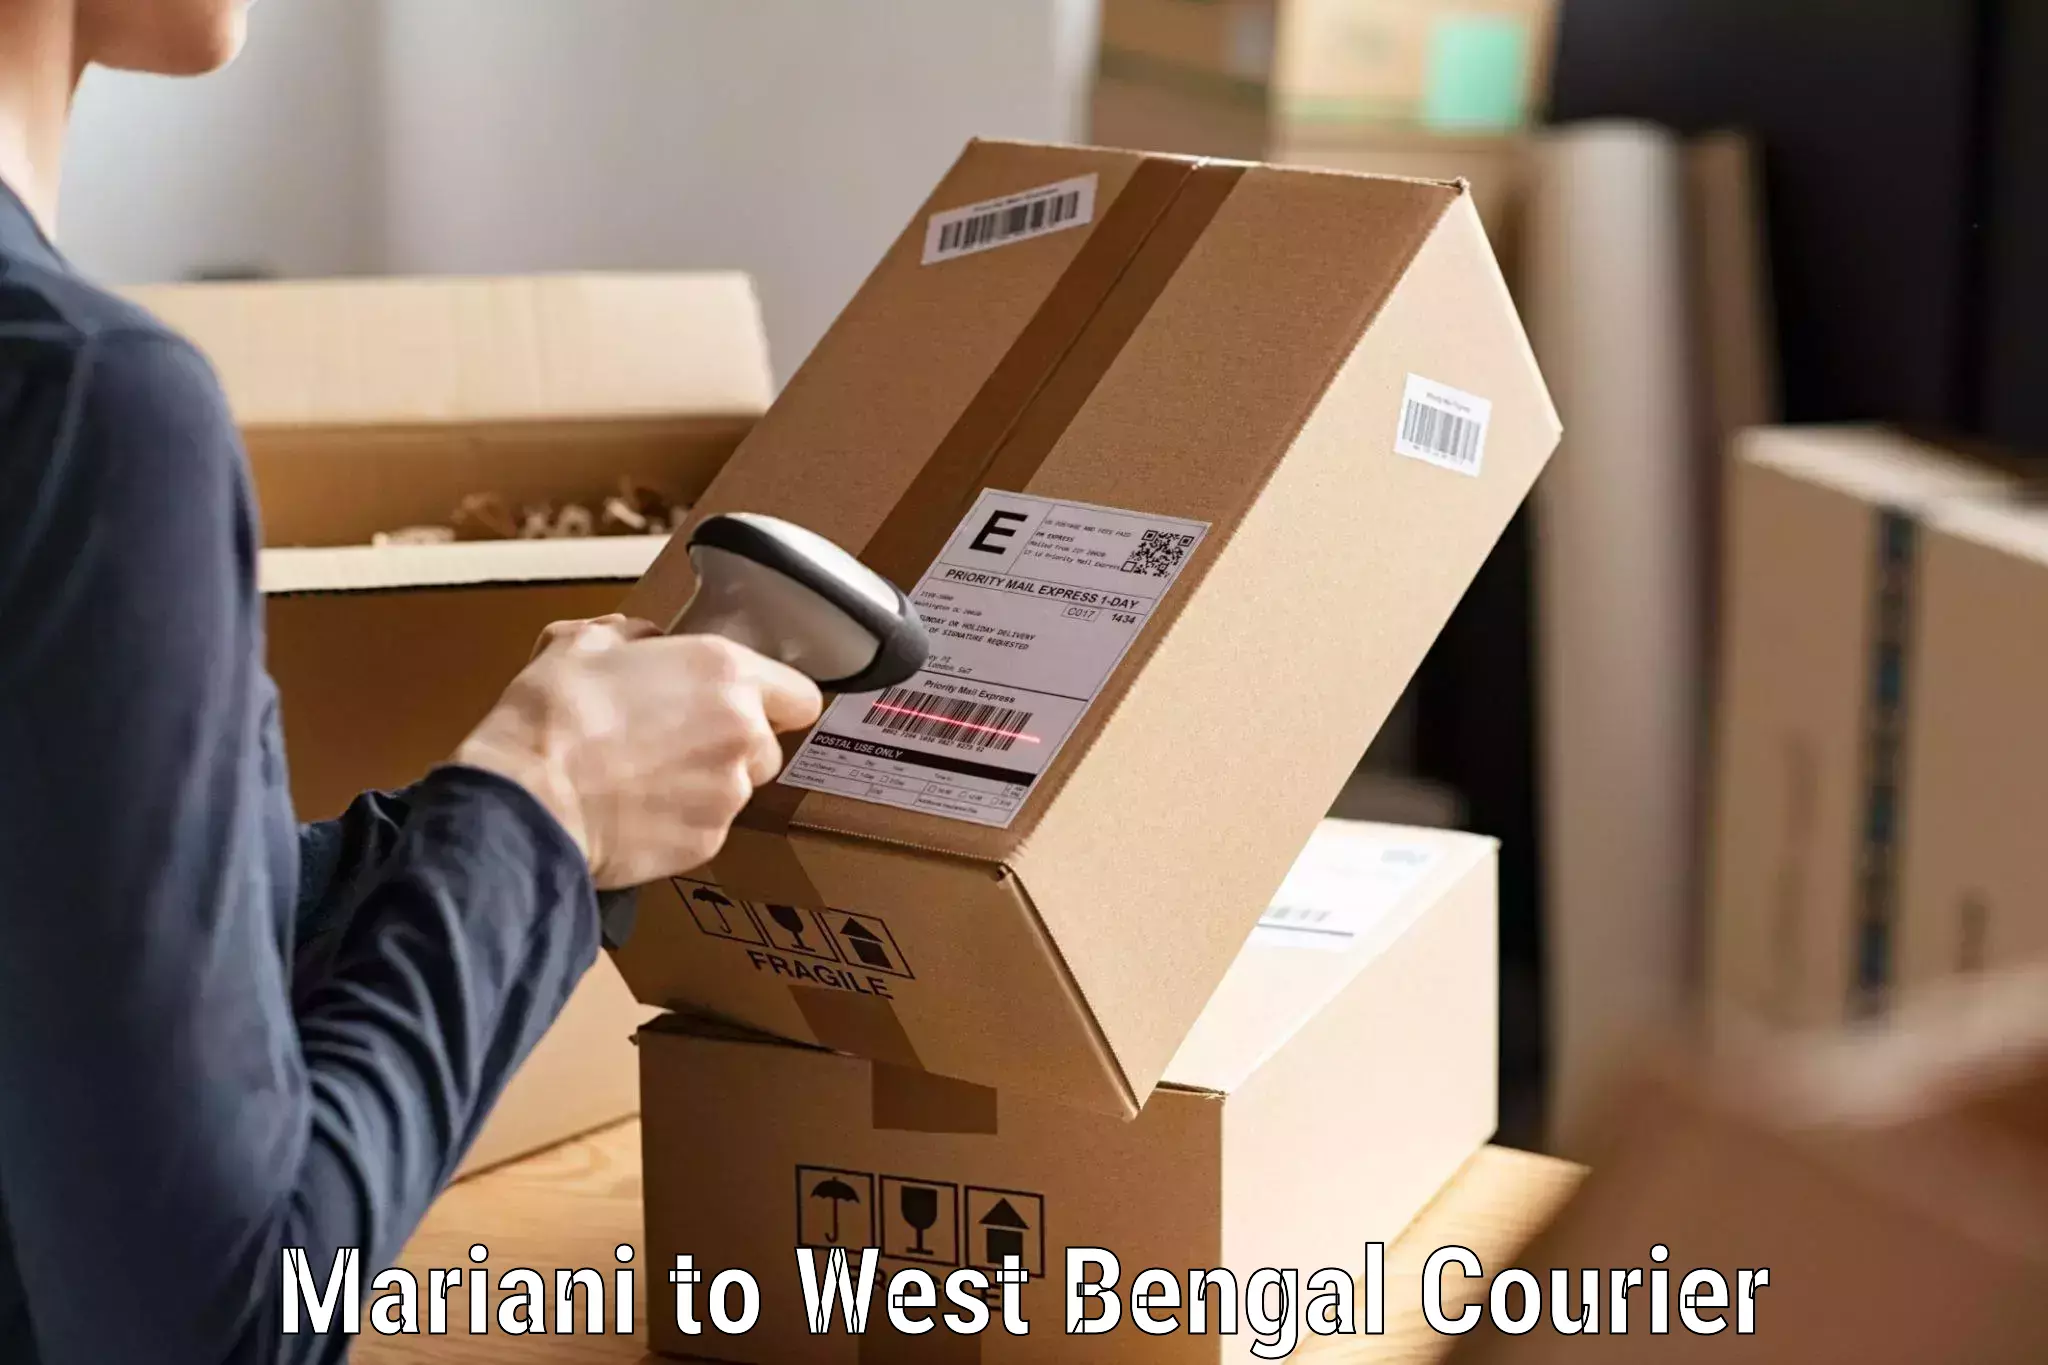 Express courier facilities Mariani to Kolkata Port